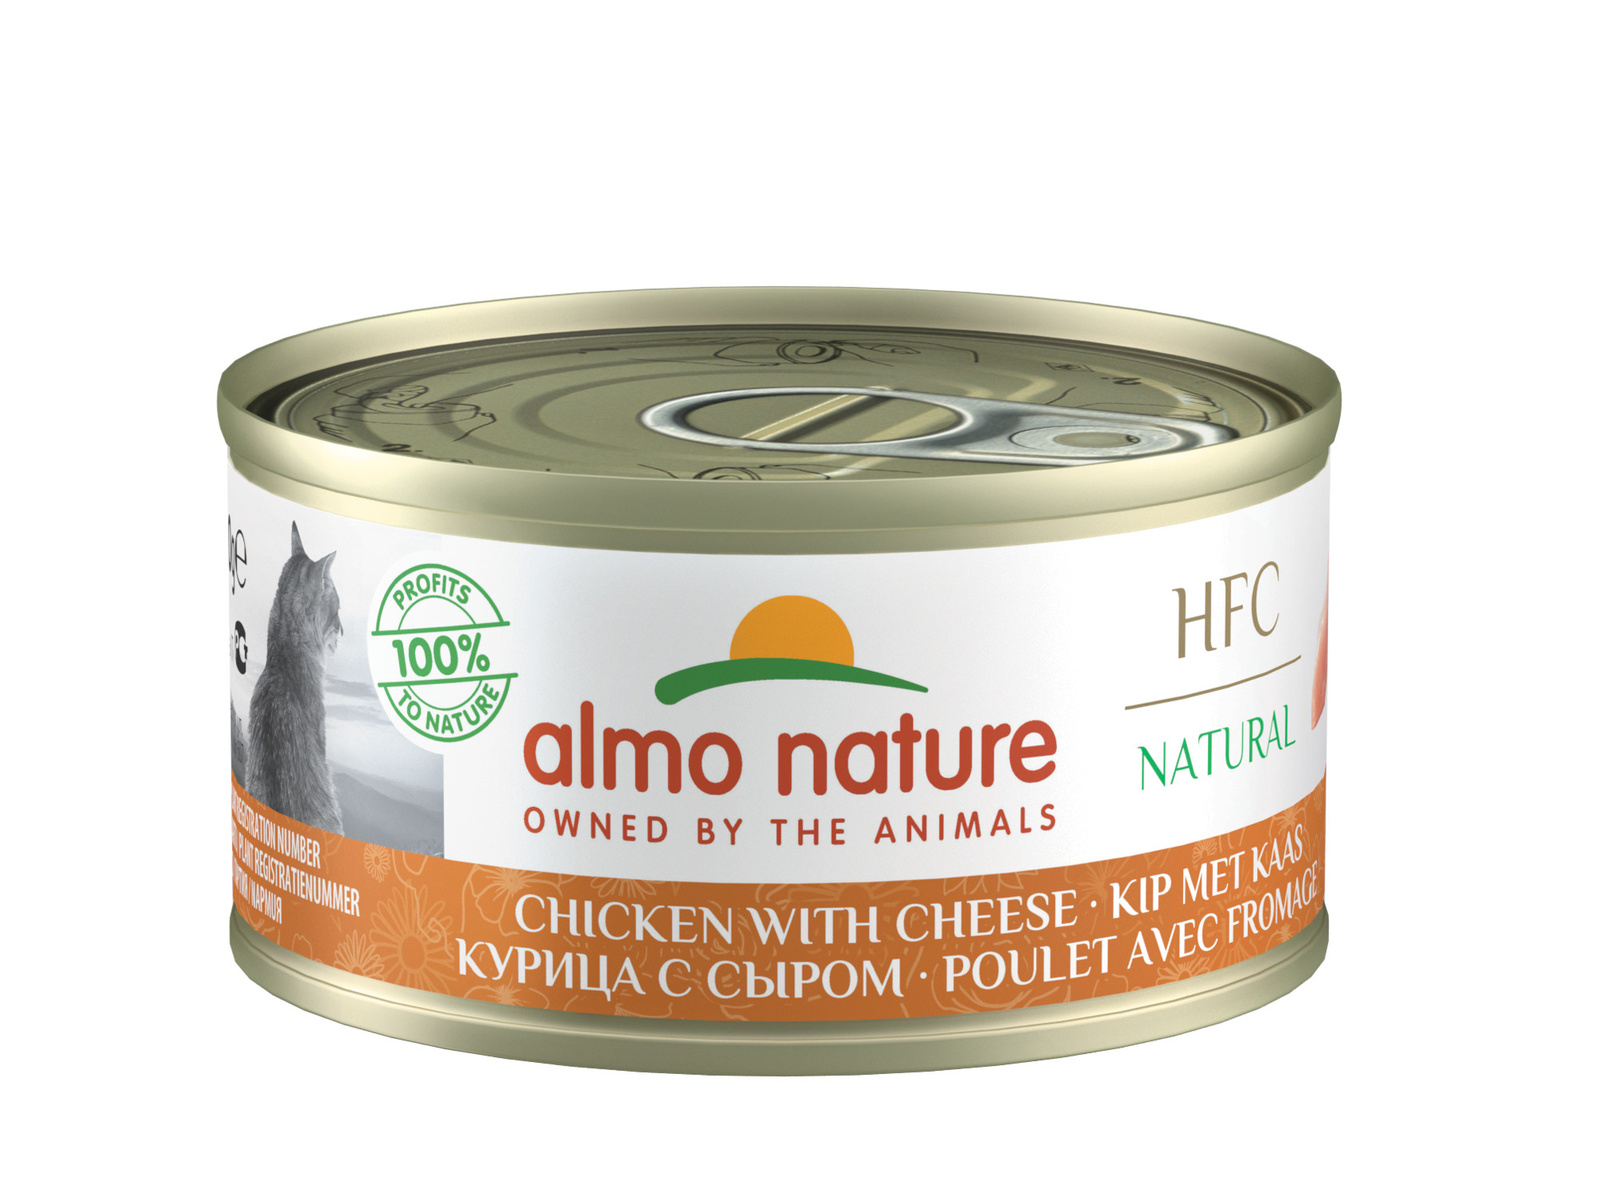 Almo Nature консервы Almo Nature консервы для кошек с курицей и сыром, 75% мяса (70 г) консервы для кошек almo nature legend с курицей и сыром 75% 70 г